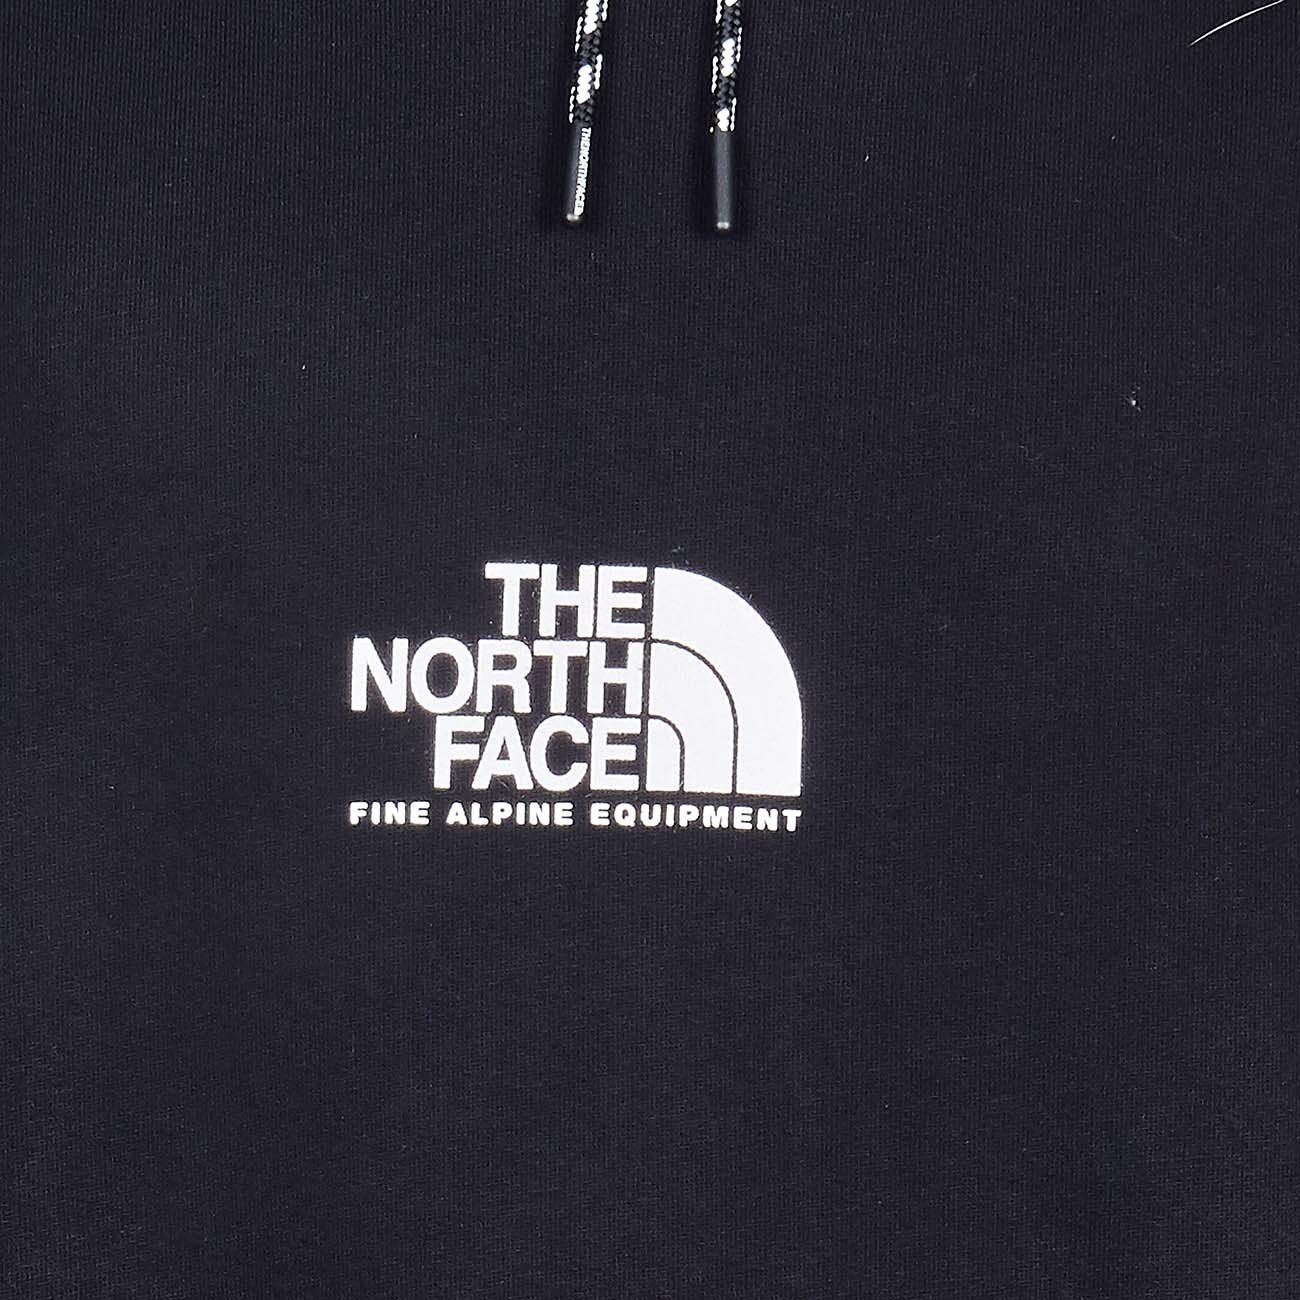 Mẫu thiết kế logo độc đáo logo the north face với trải nghiệm tuyệt vời